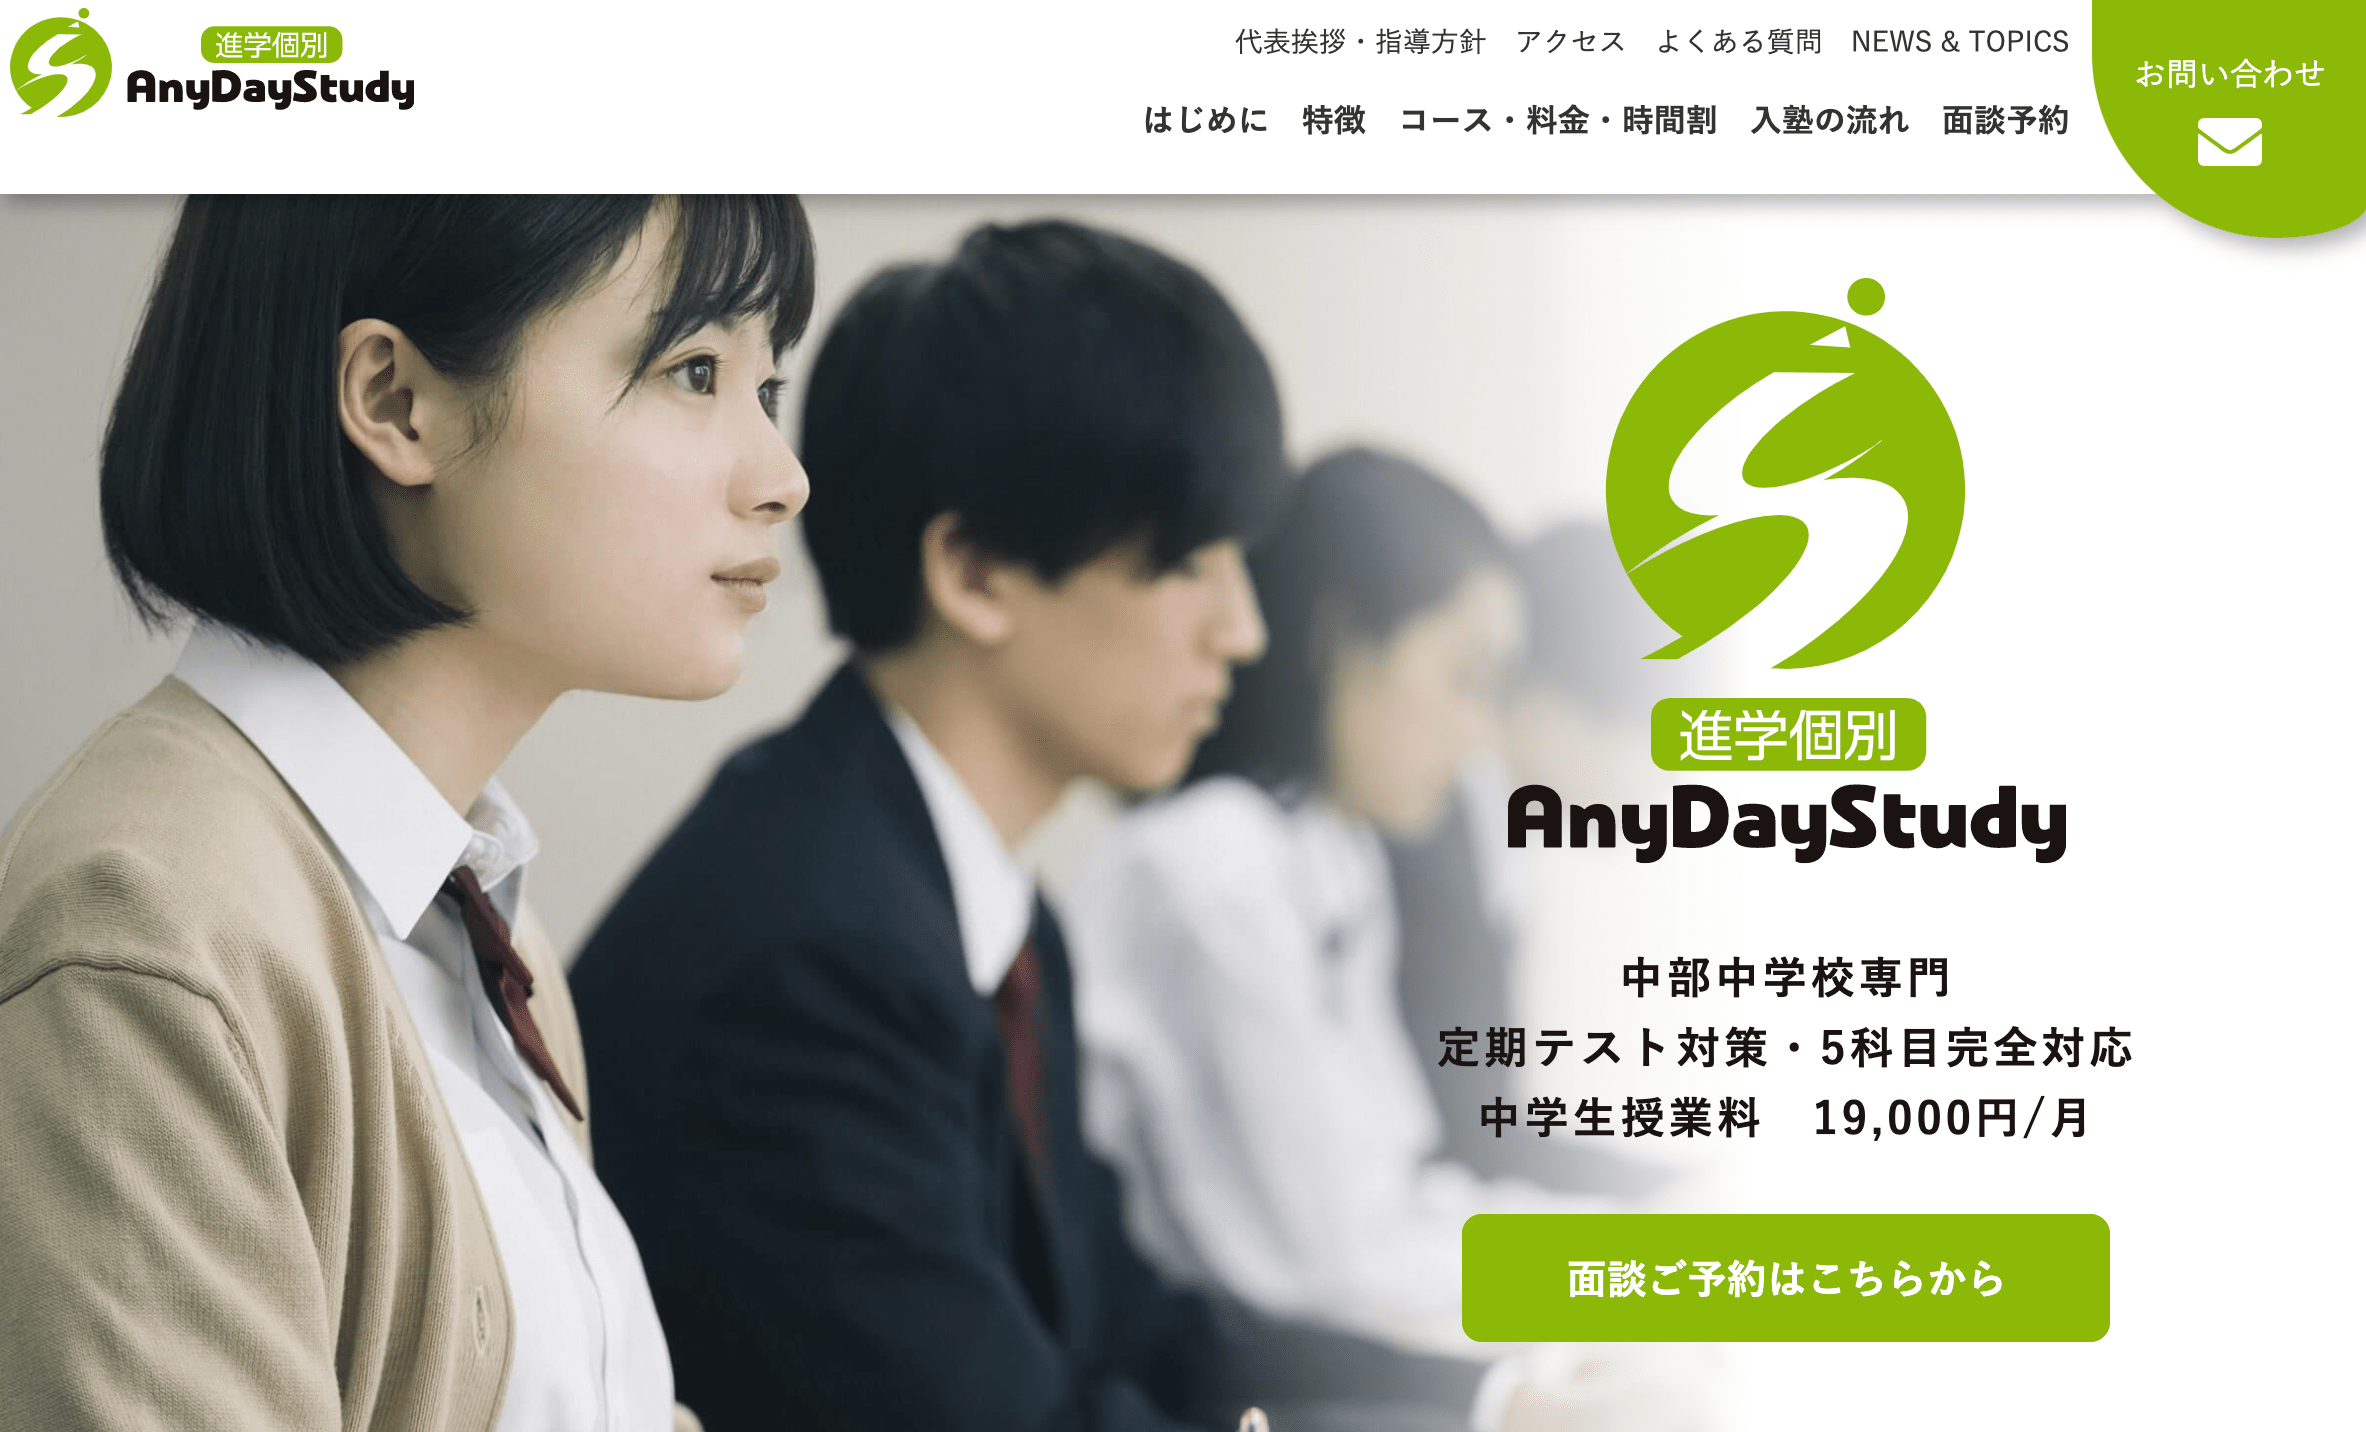 兵庫県加古川市にある学習塾「AnyDayStudy」様のホームページを新規作成